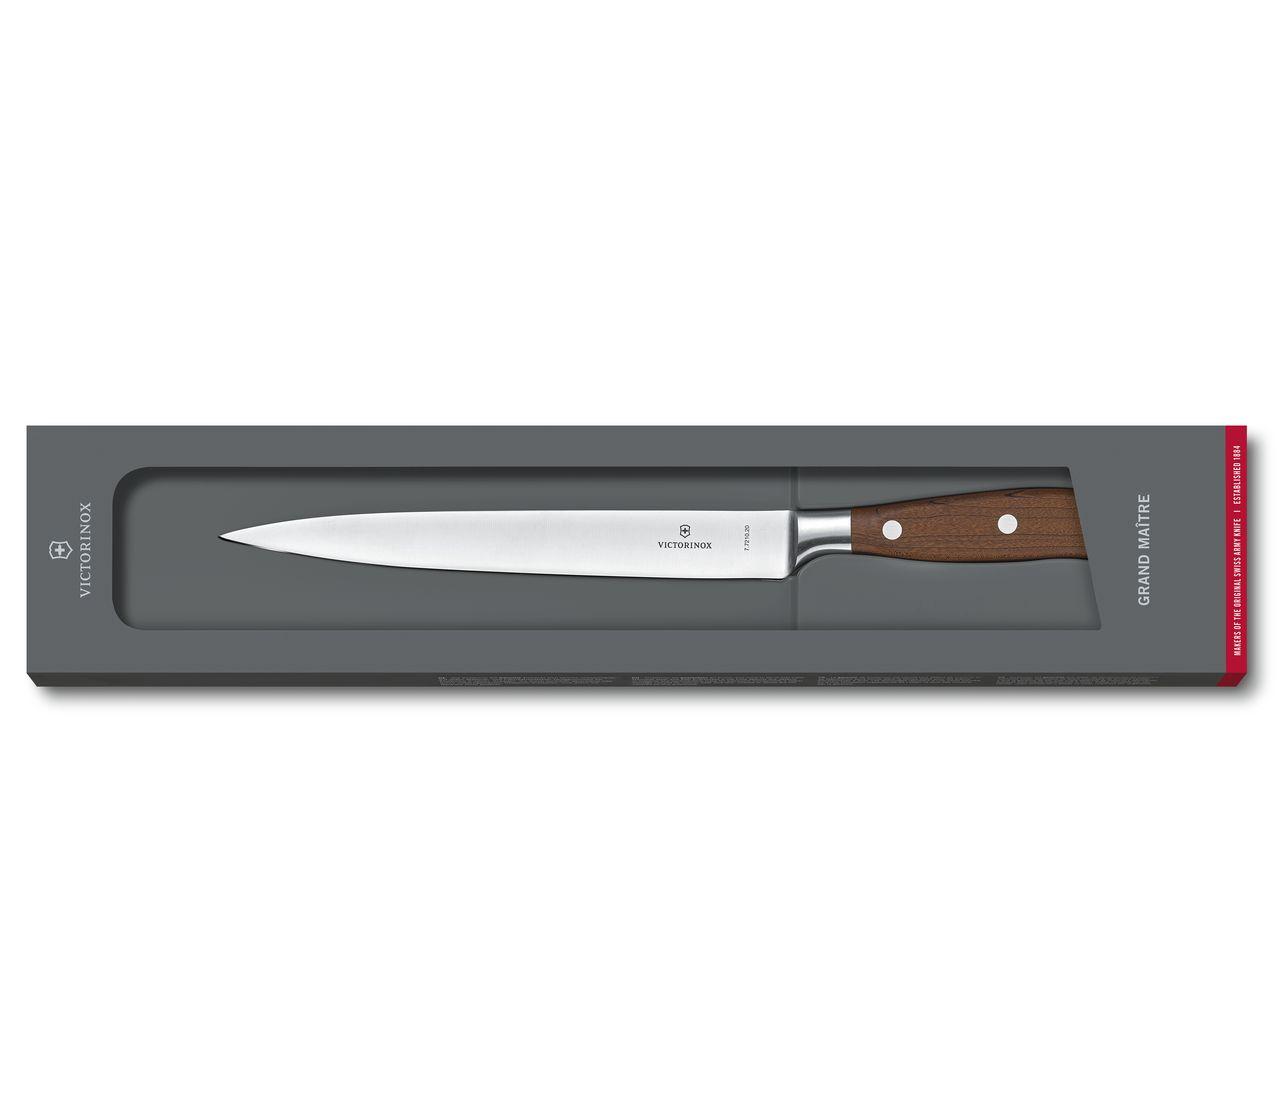 Grand Maître Wood Filleting Knife-7.7210.20G